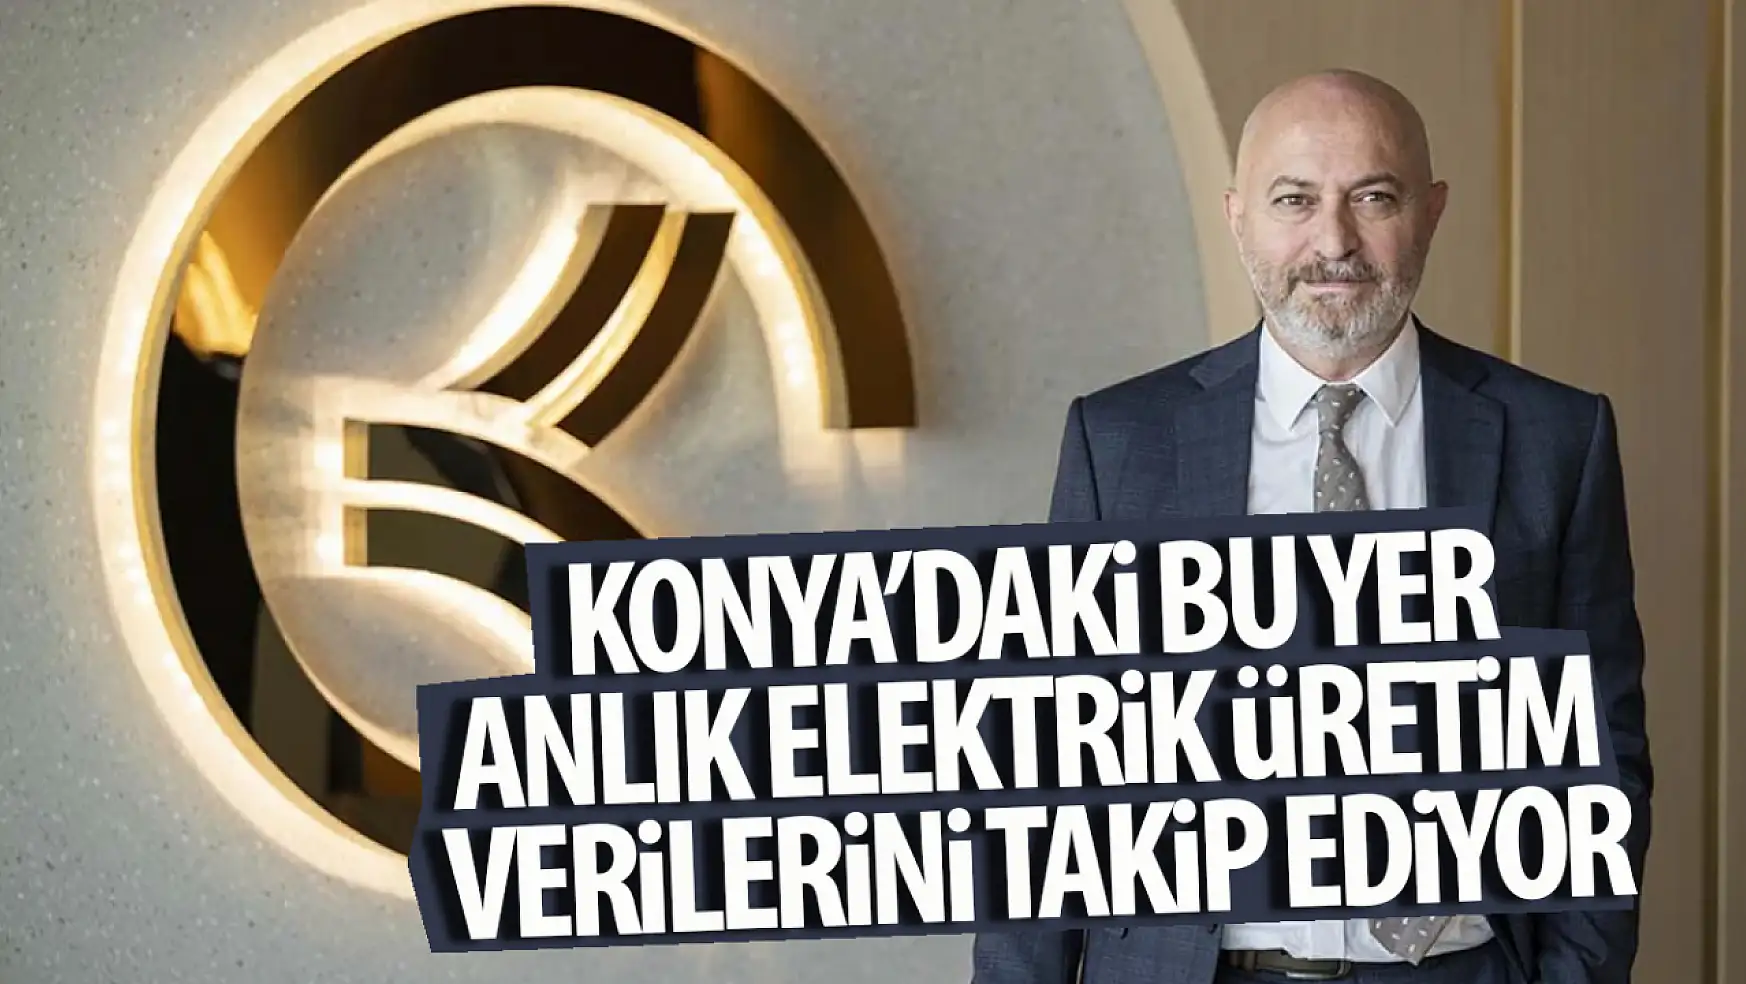 Konya'da bu yer anlık elektrik üretim verilerini takip ediyor!